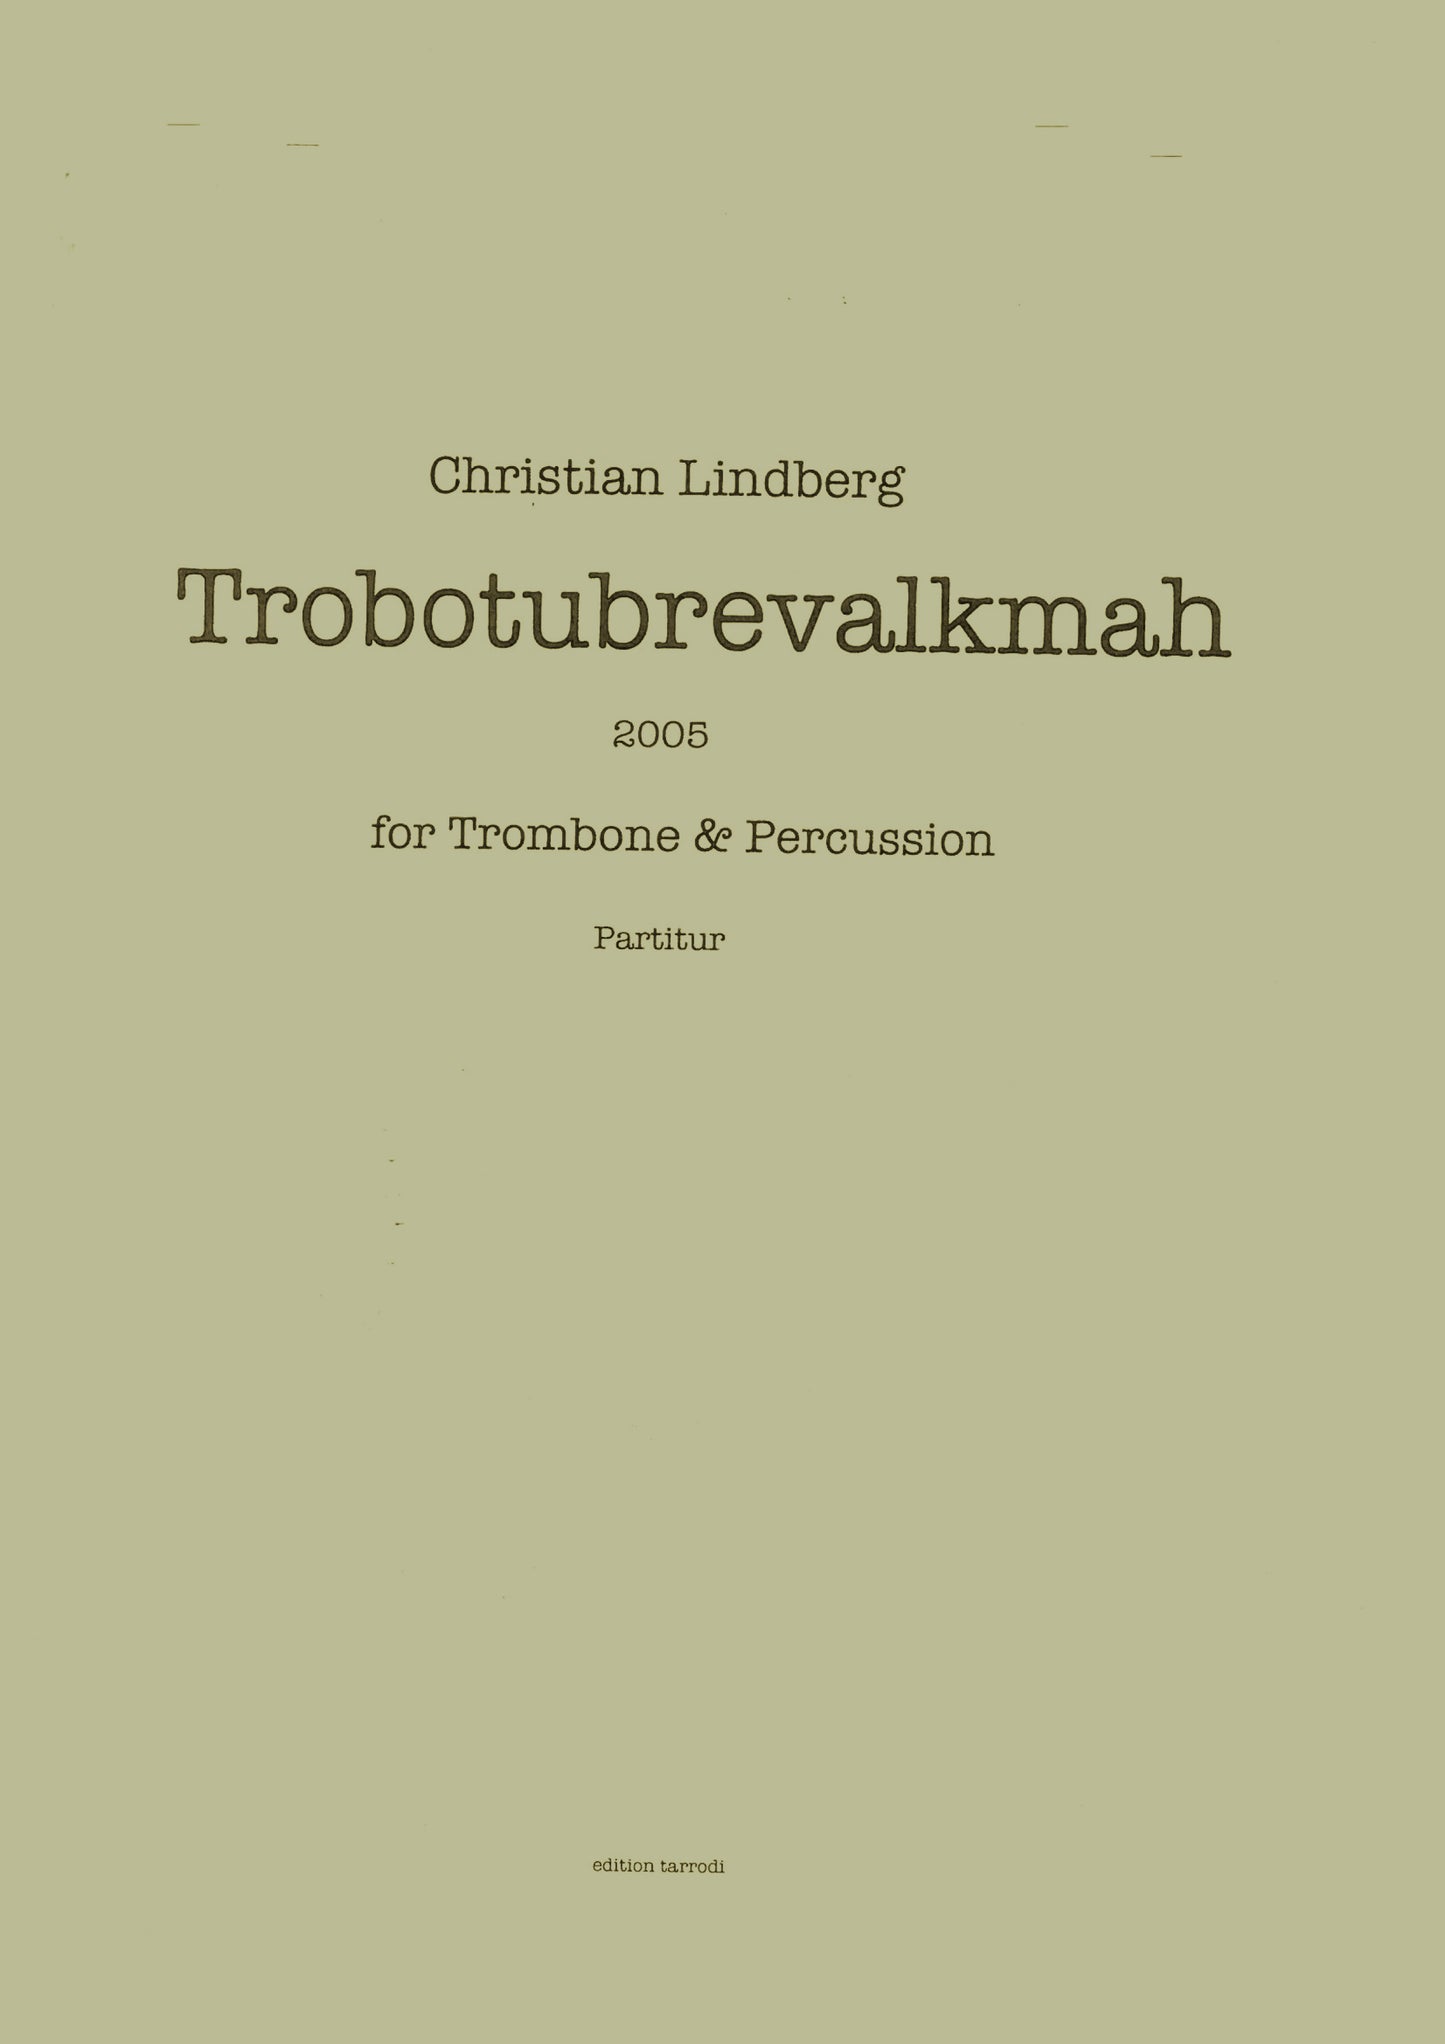 Christian Lindberg - Trobotubrevalkmah Trombone & Percussion